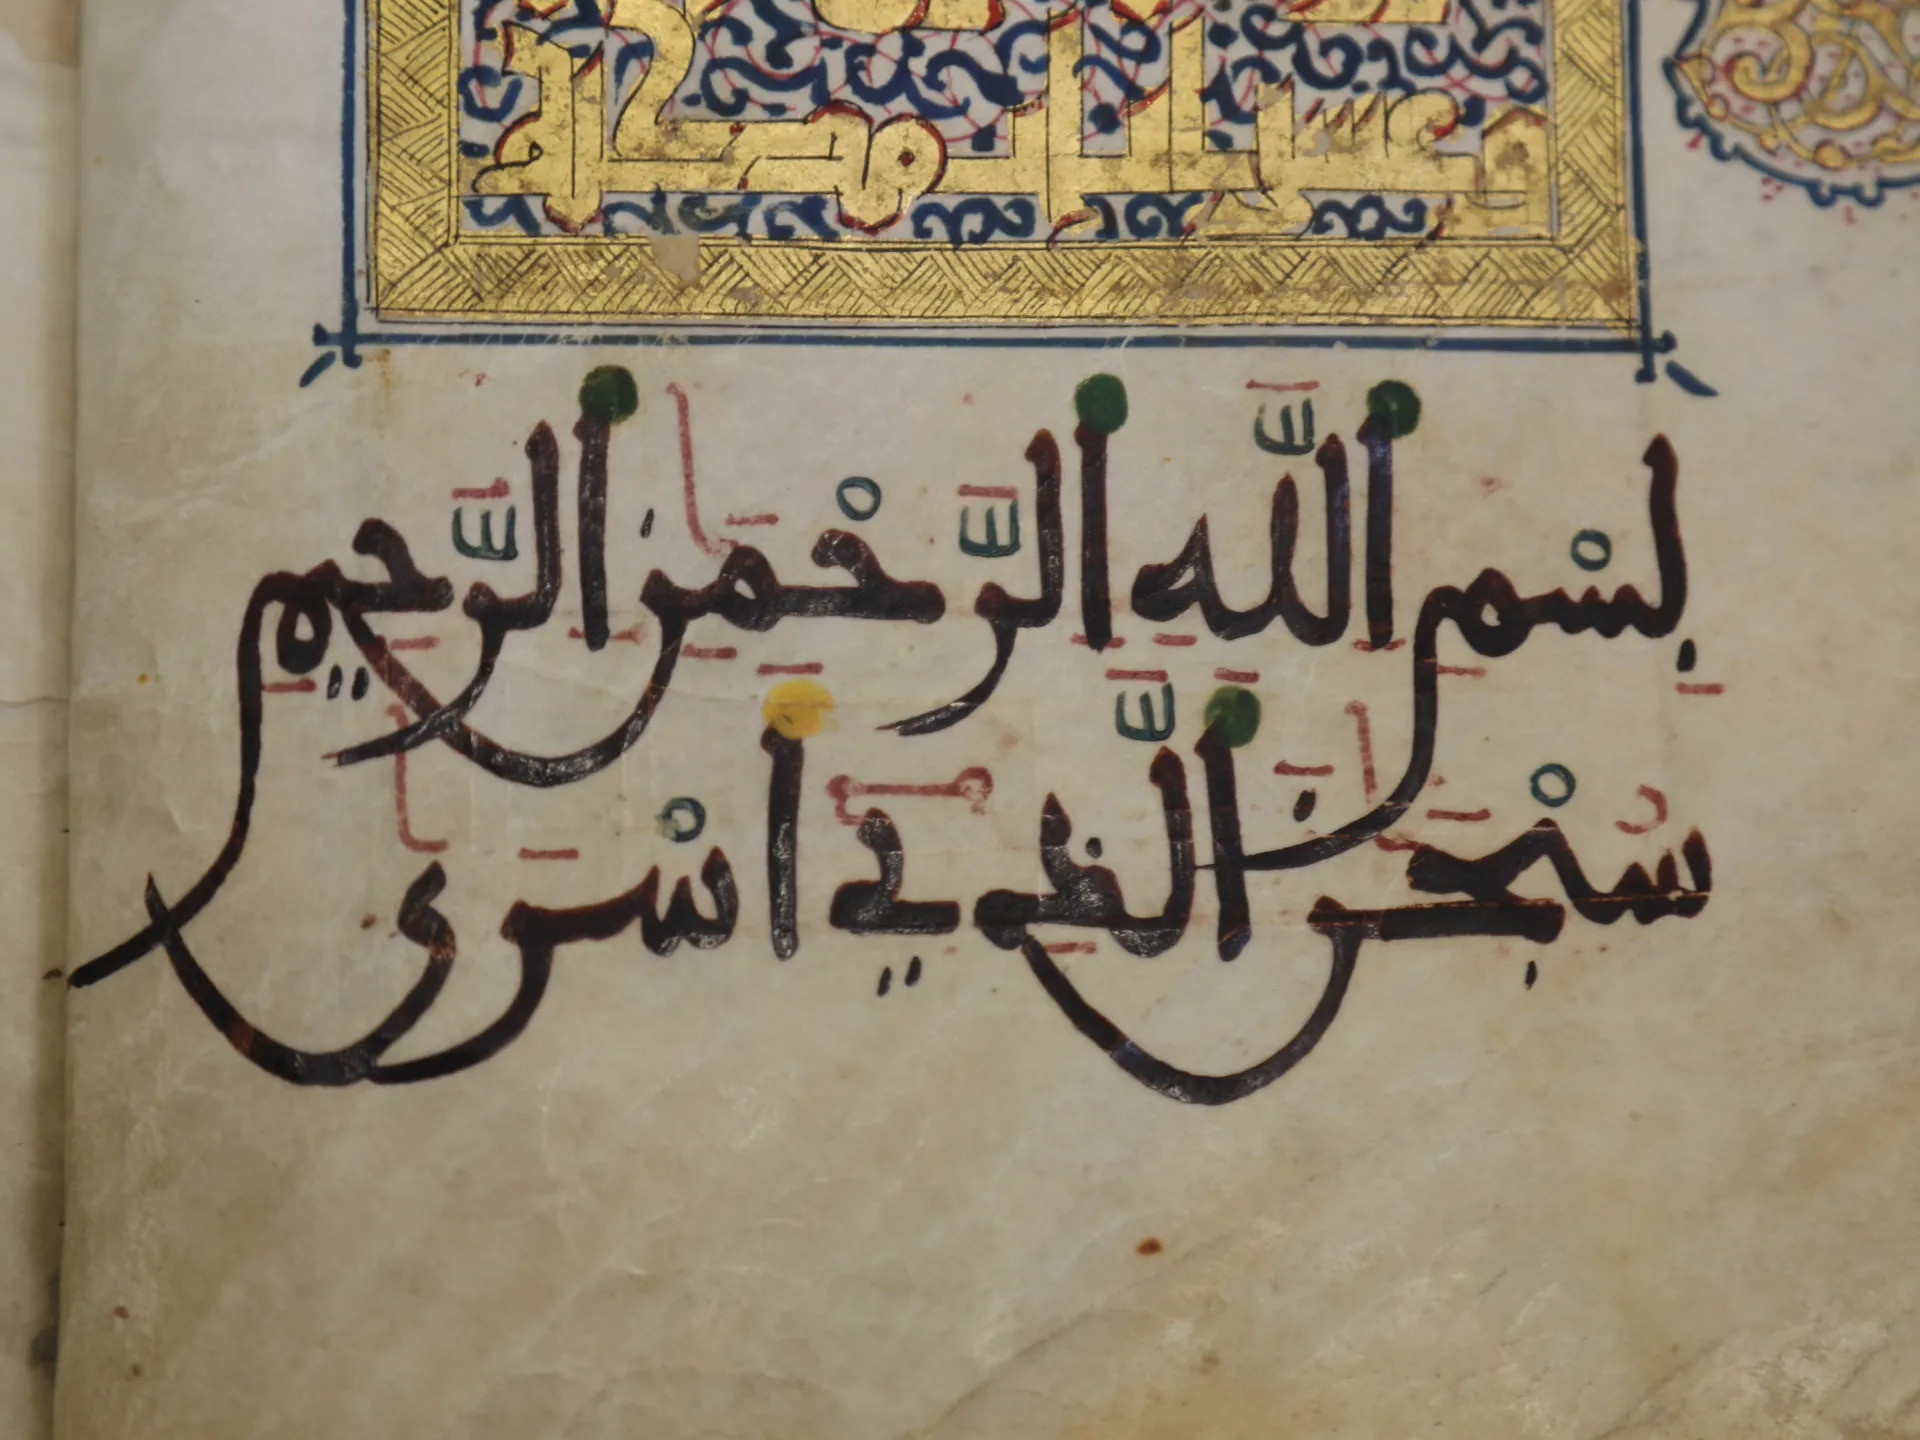 Fas Rab'a'sında, surelerin başında ve sonunda her türden kûfî yazı kullanılmış, sureler bezemeli ve süslemeli levhalarla başlatılmıştır.